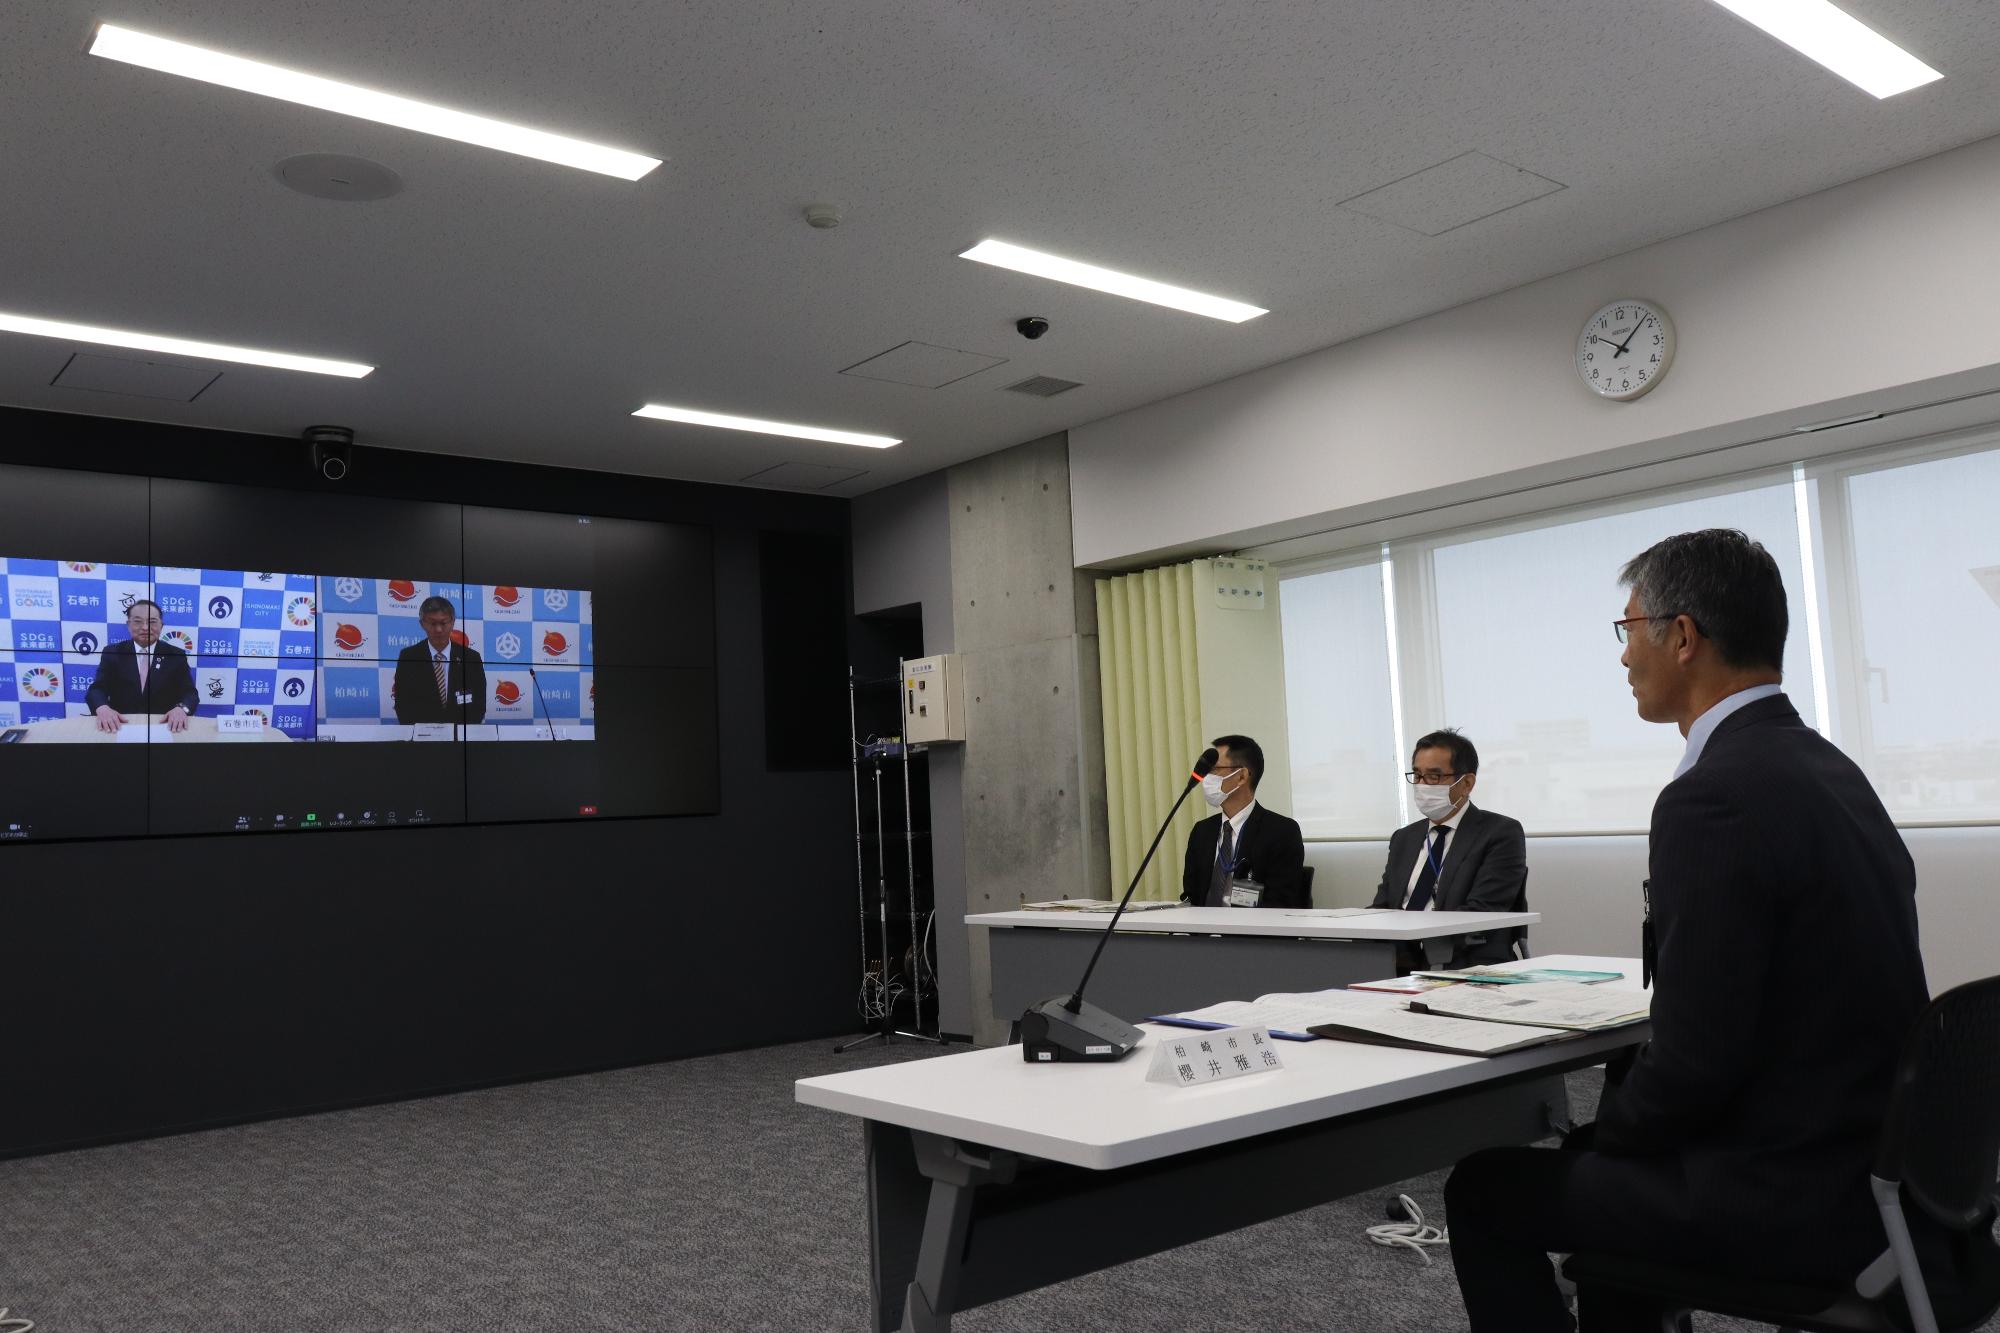 WEB会議のシステムにより、市長と石巻市長が並んで画面上に映し出されている様子